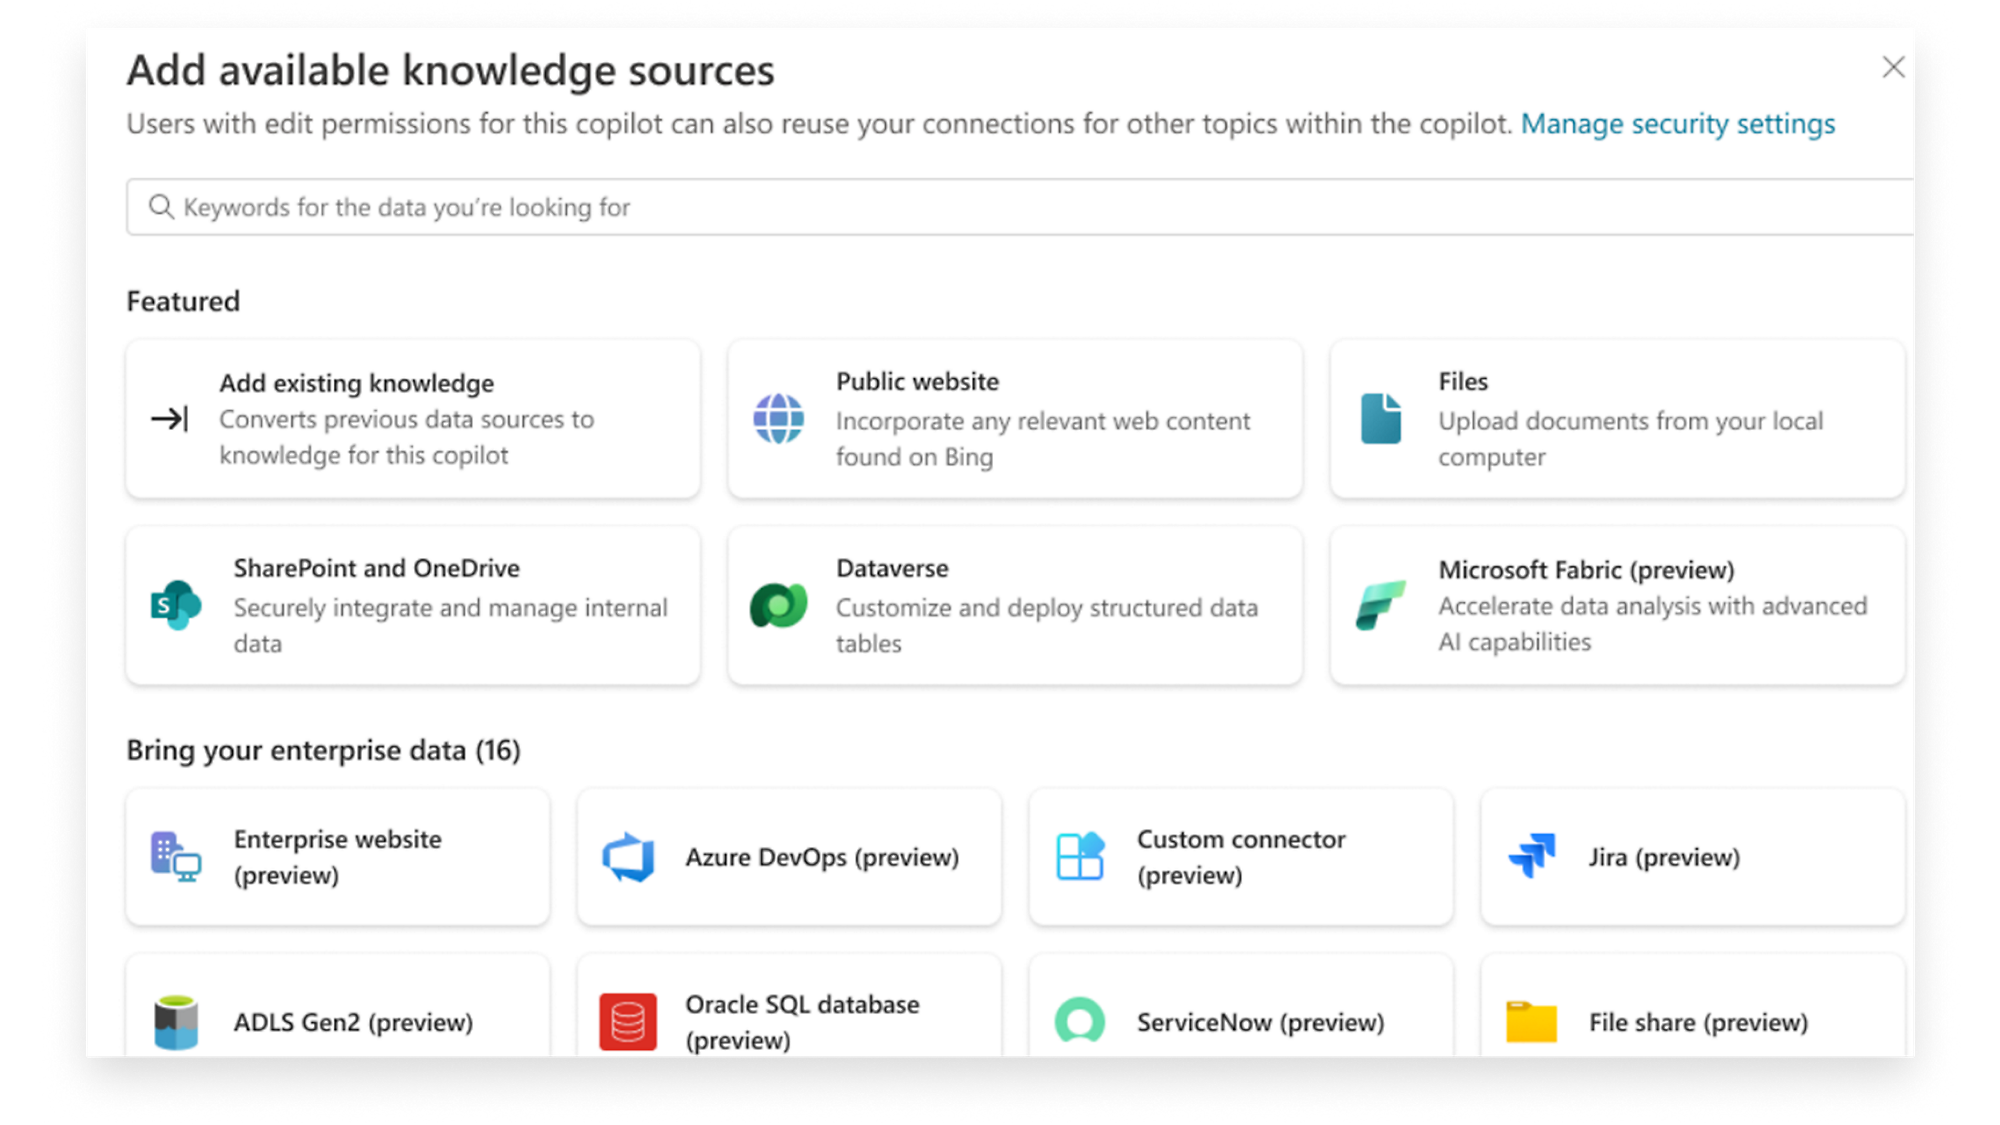 Přidejte zdroje znalostí a integrujte SharePoint, OneDrive, Dataverse, soubory a další zdroje pro obohacování dat kopilotem